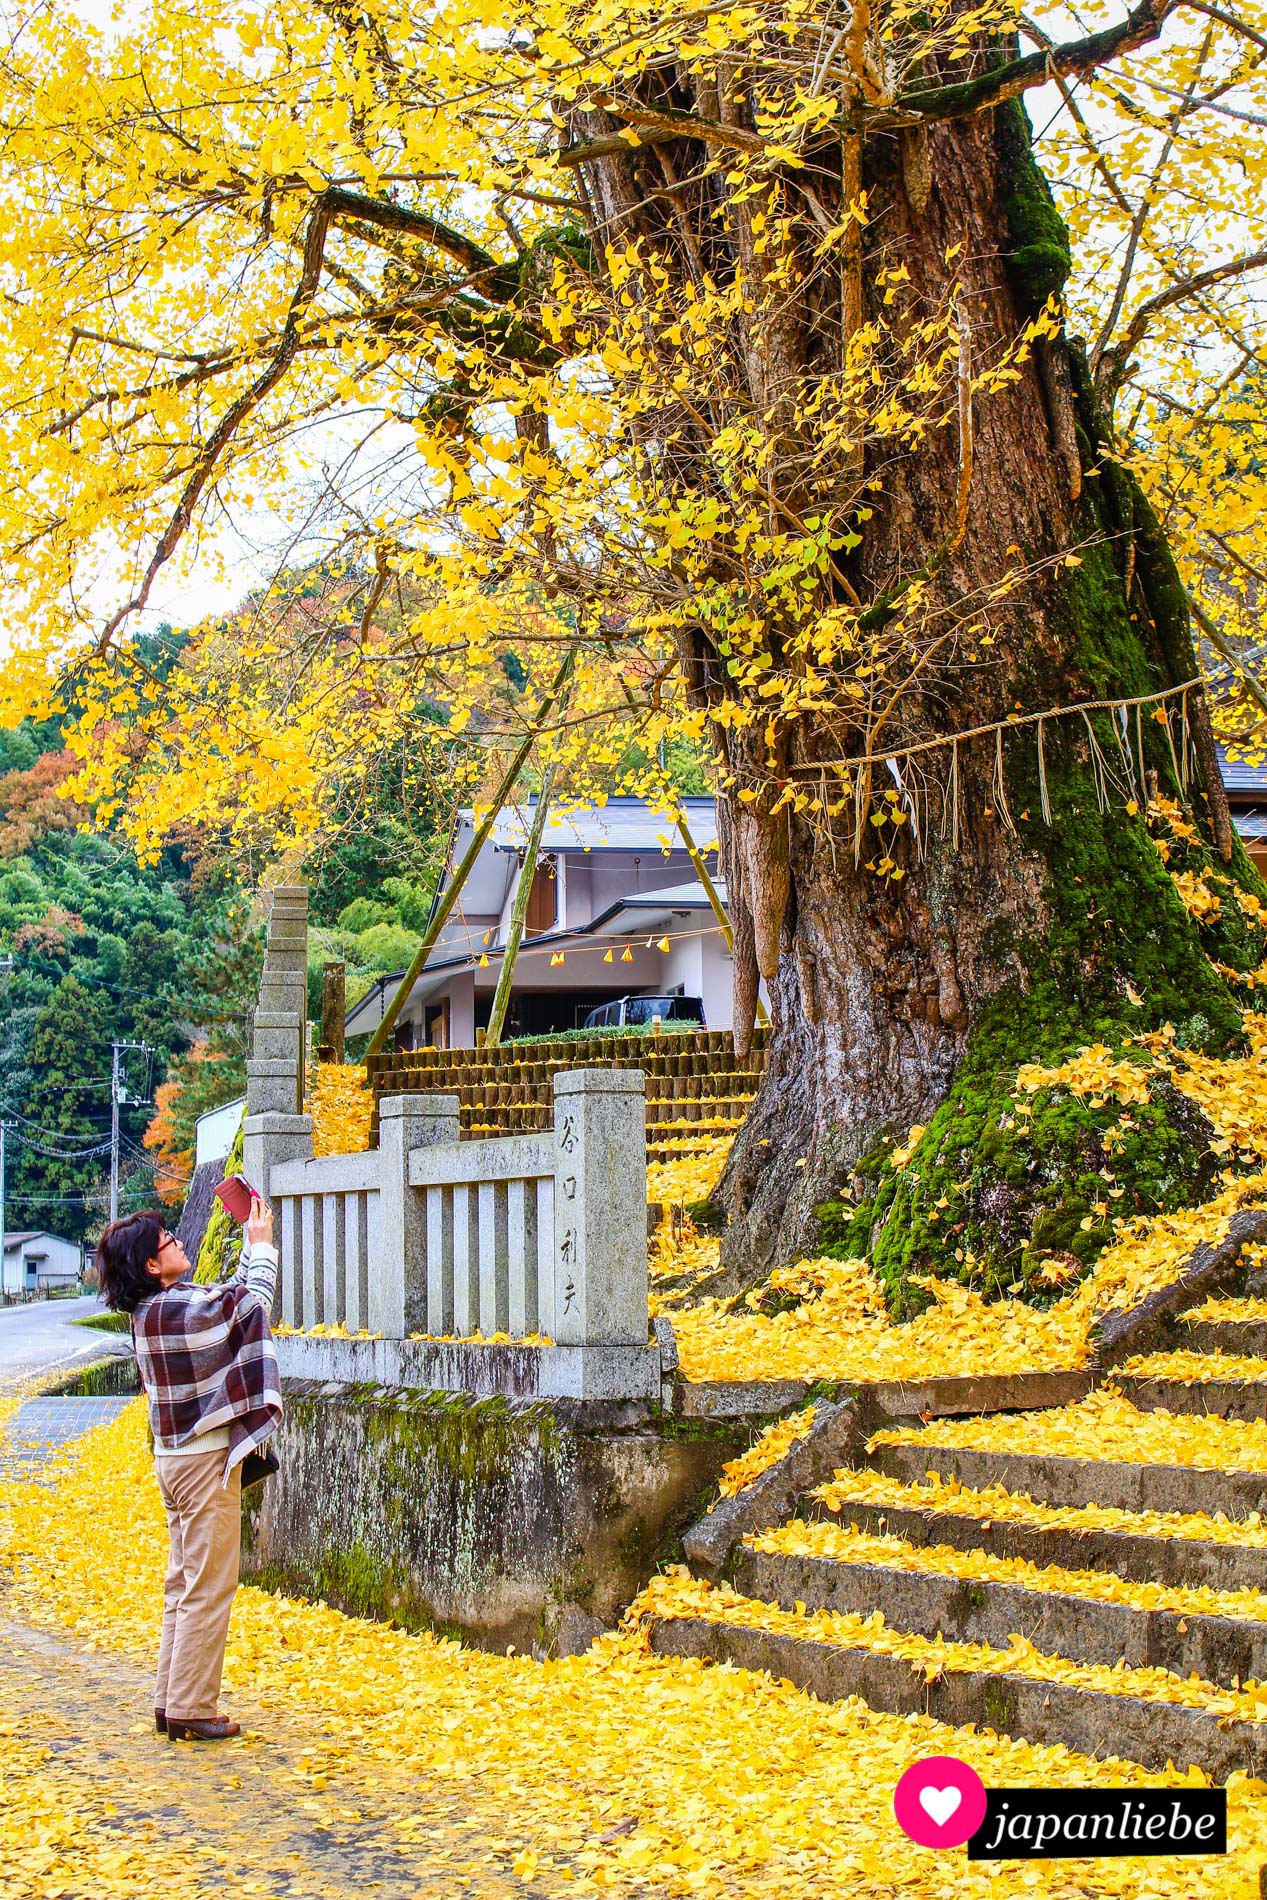 Beliebtes Fotomotiv: die Ginko des Iwabu Hachiman-Schreins in Shionoe.